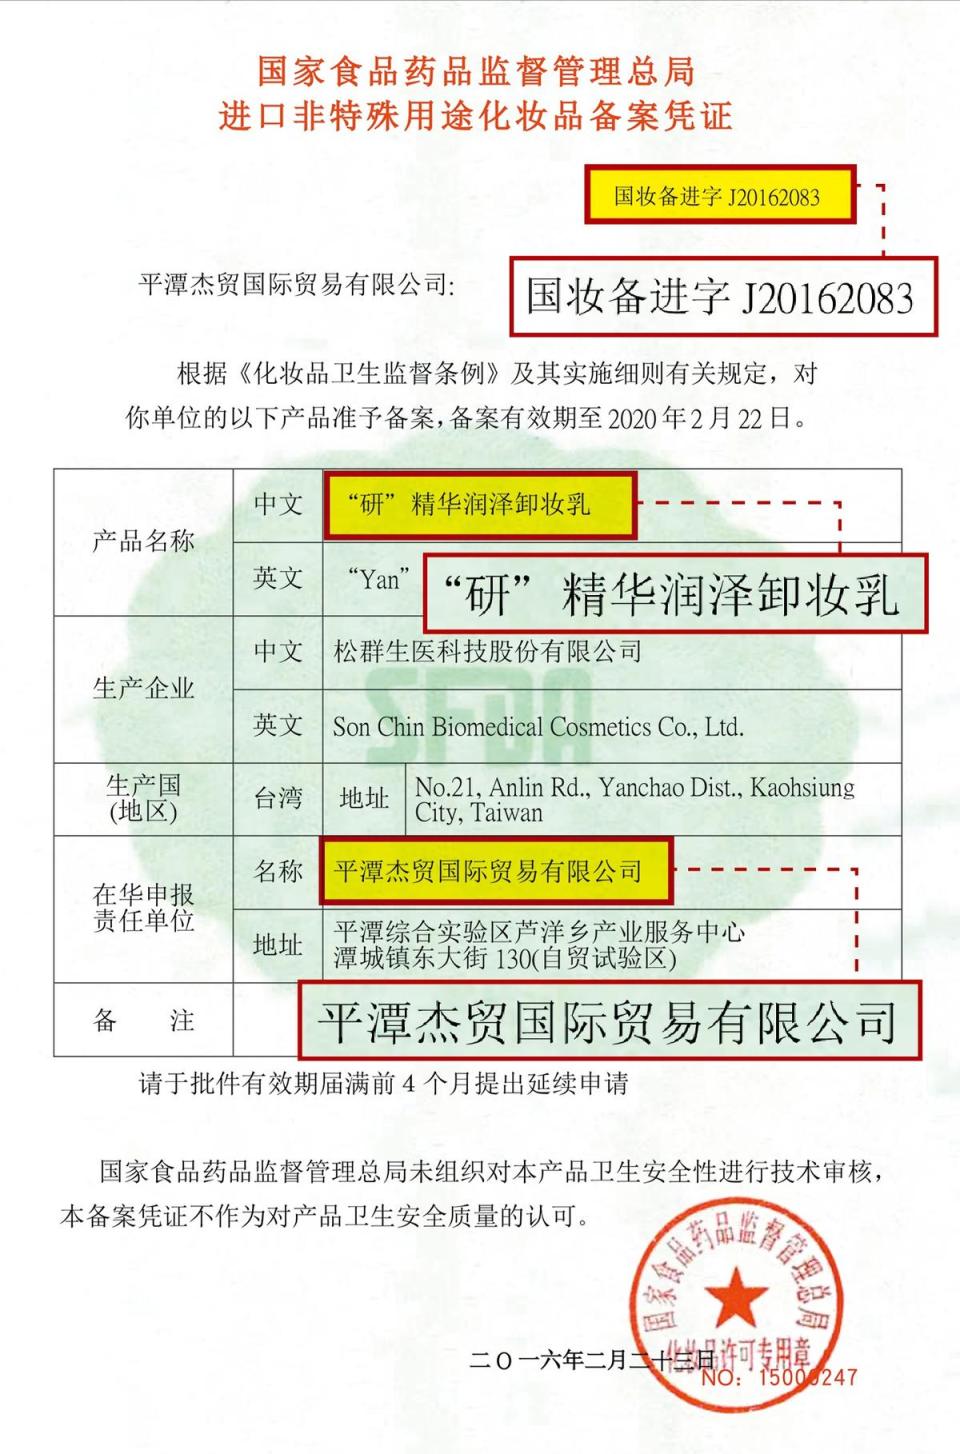 葉啟中指控曾碧珠寄給該公司的中國官方化妝品進口備案憑證，以相同字號到中國國家食品藥品監督管理總局官網查詢，竟是其他廠牌產品，涉嫌假造中國官方證件。（葉啟中提供）